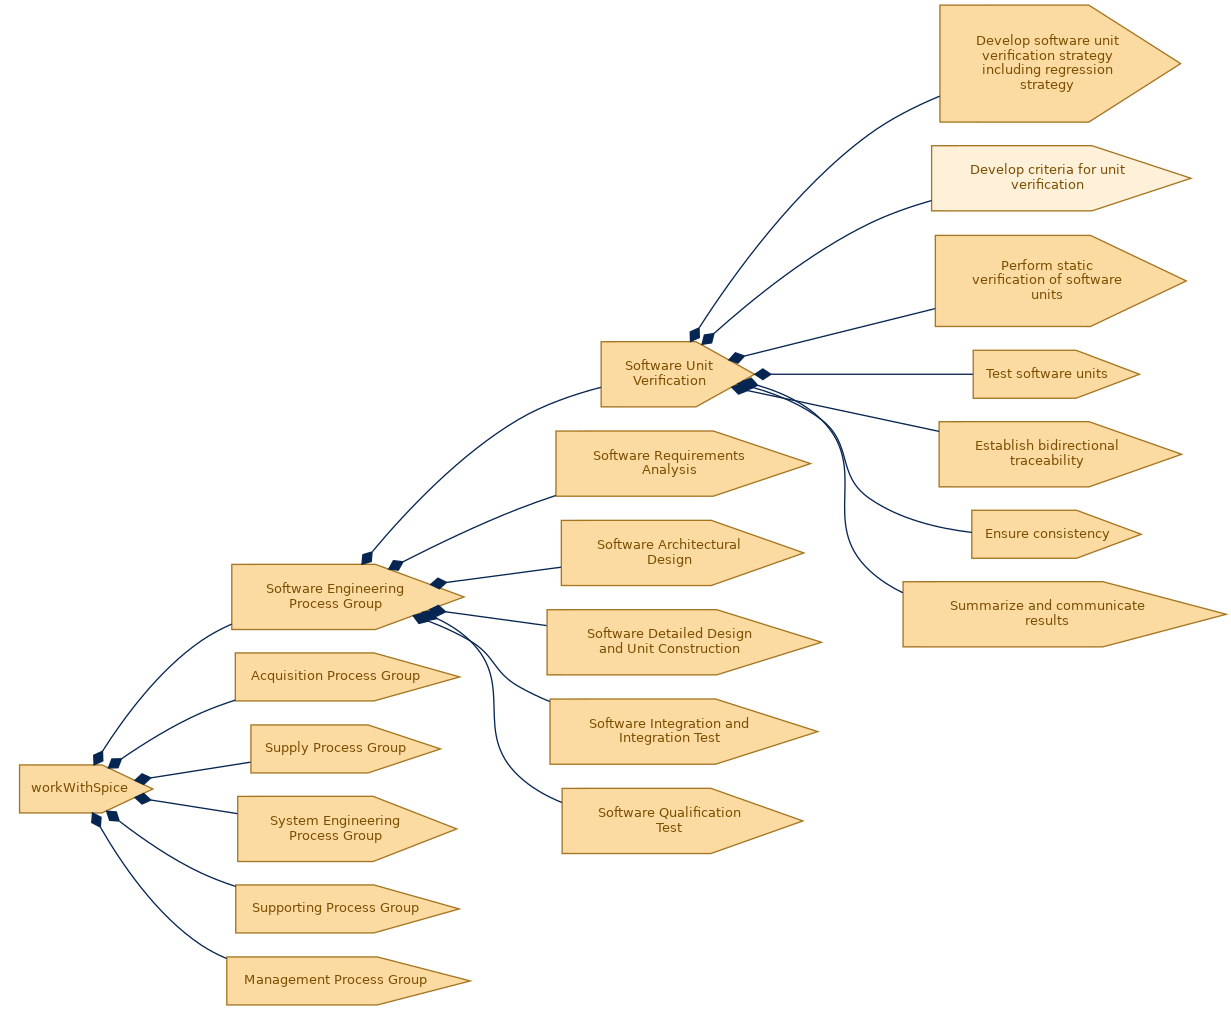 spem diagram of the activity breakdown: Develop criteria for unit verification